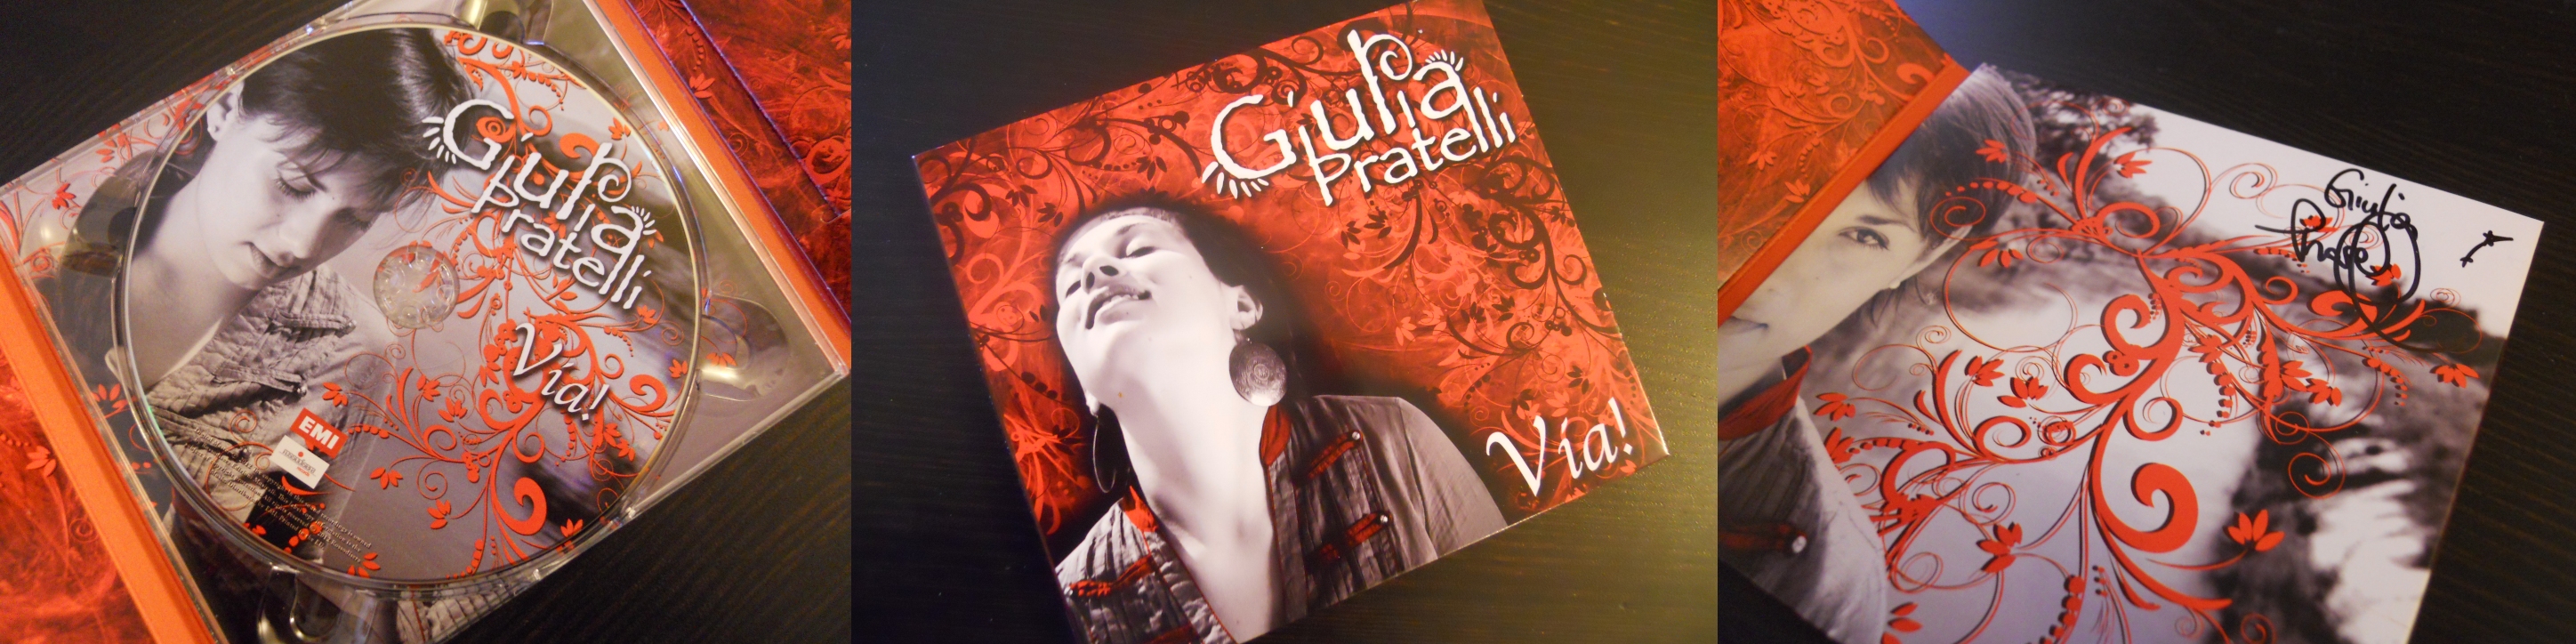 Vinci il CD autografato di Giulia Pratelli!